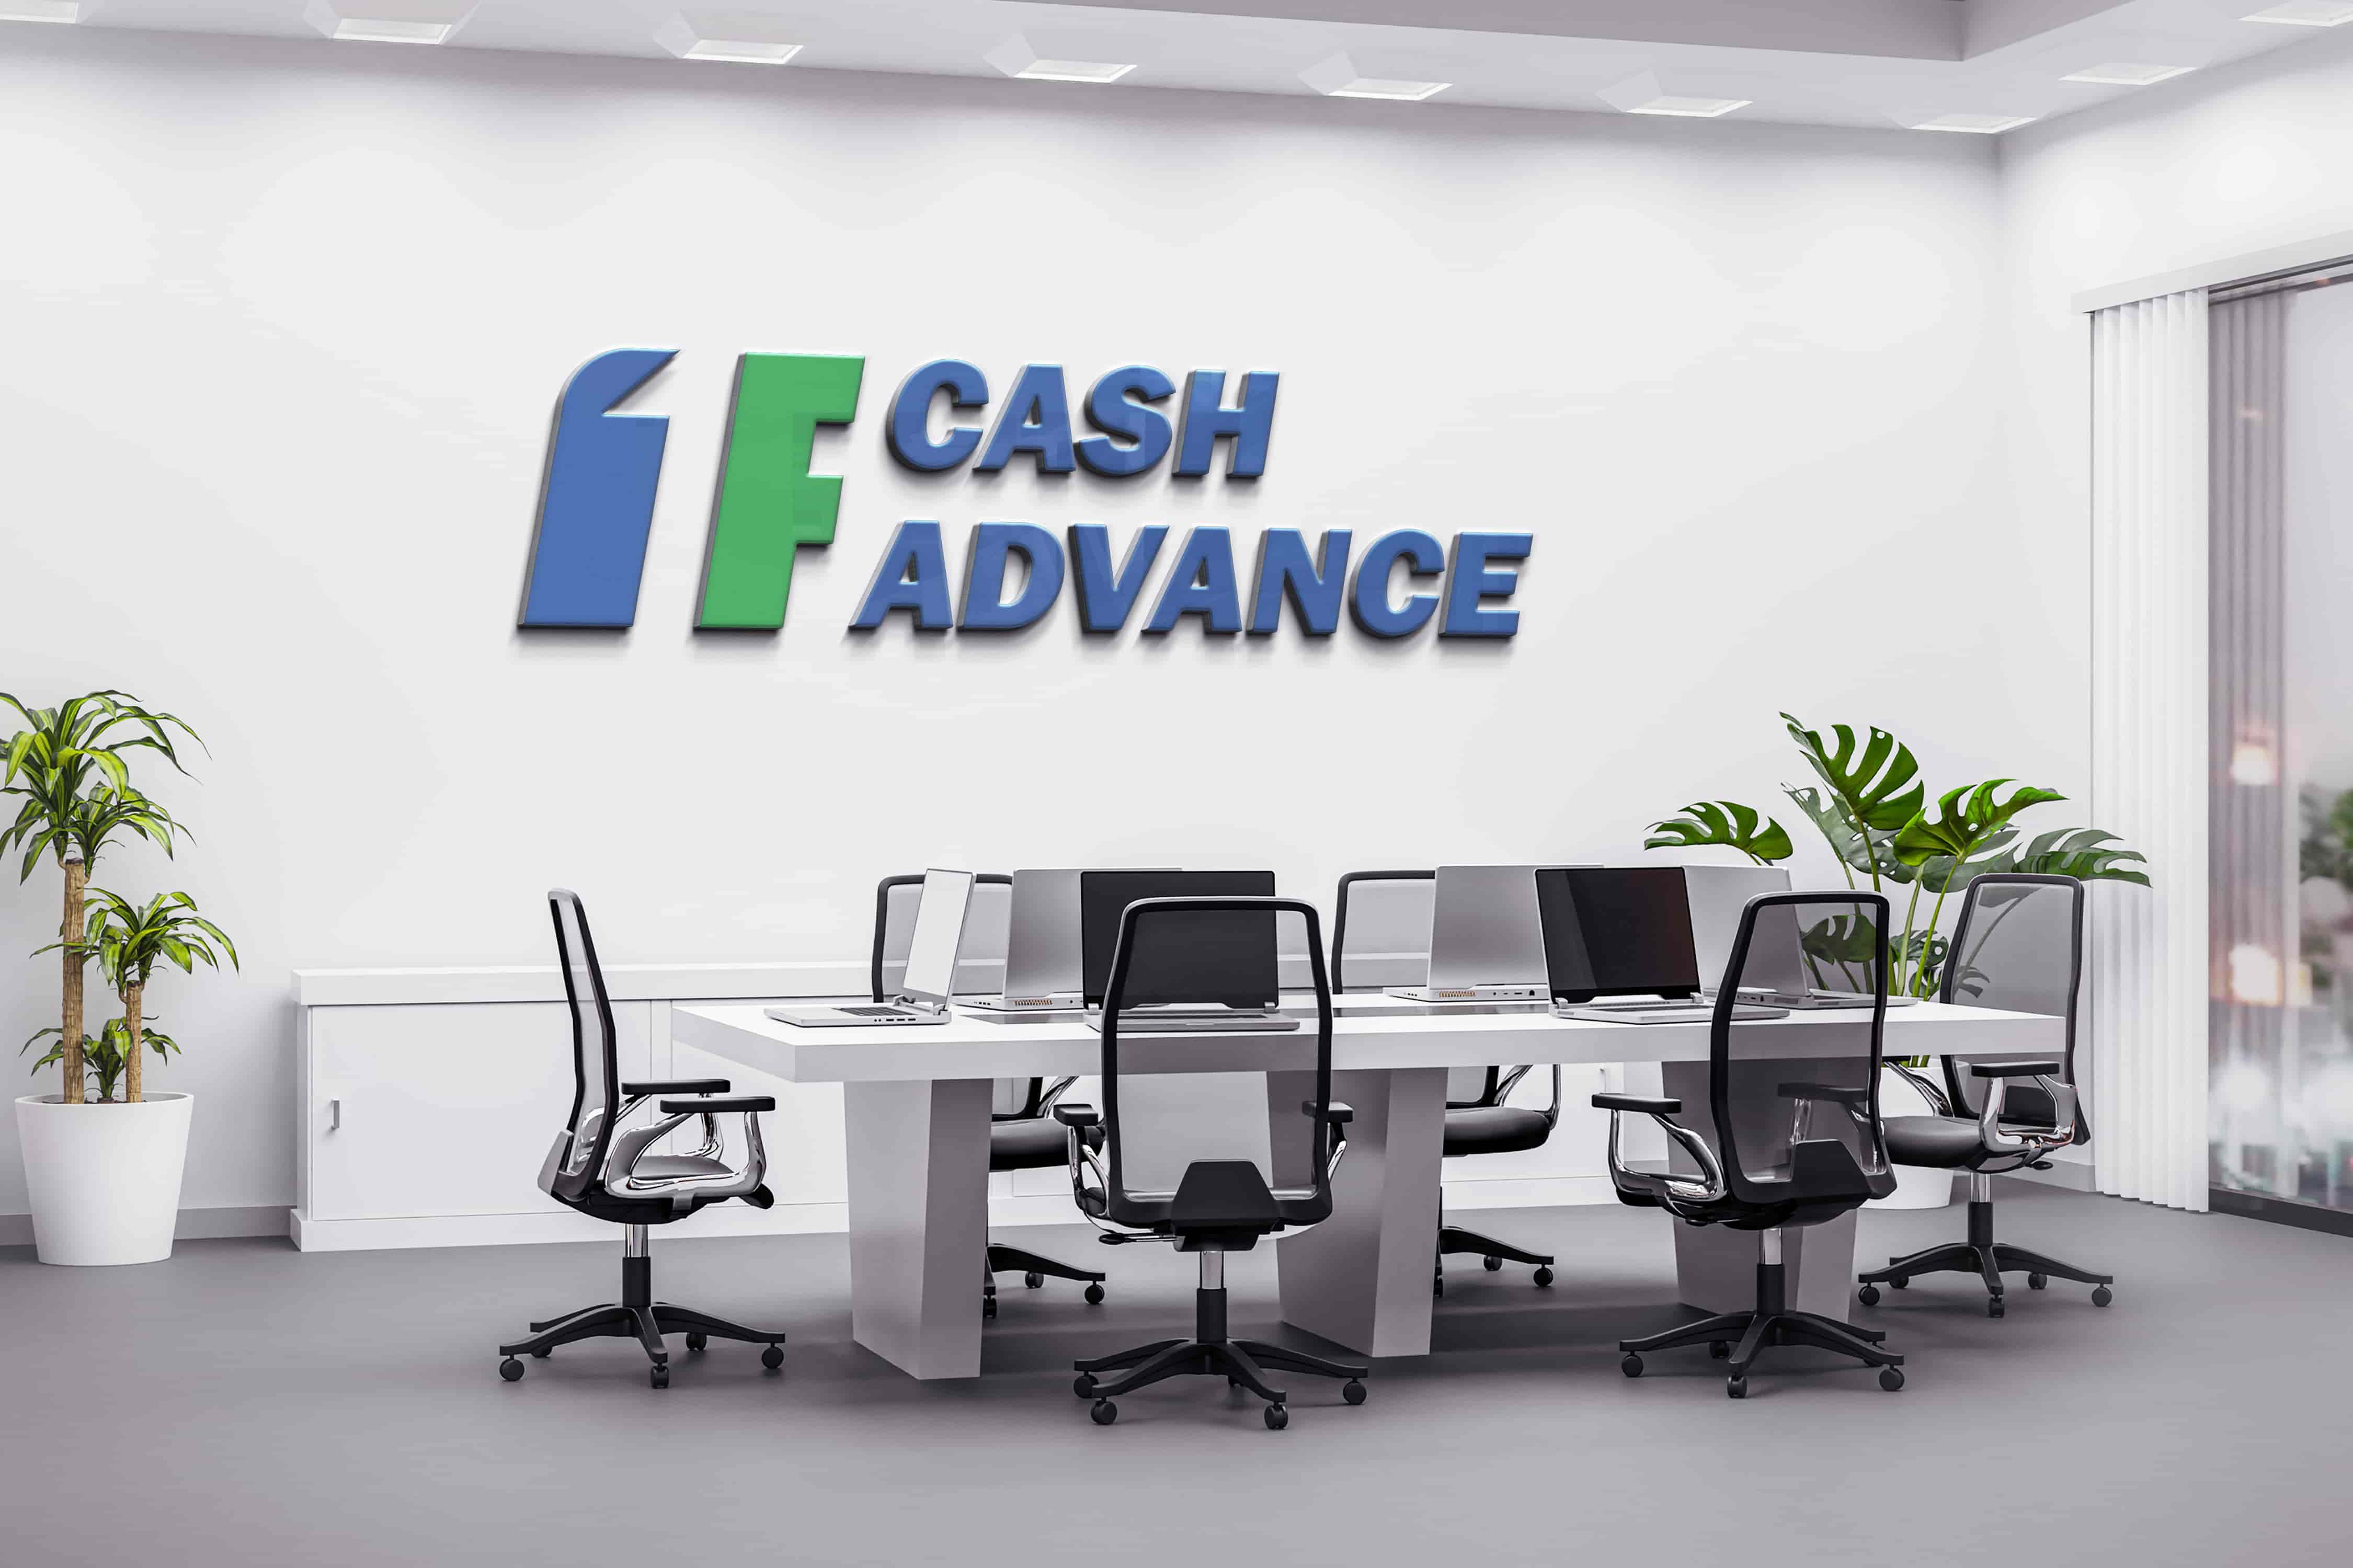 Cash advance in Peoria, IL